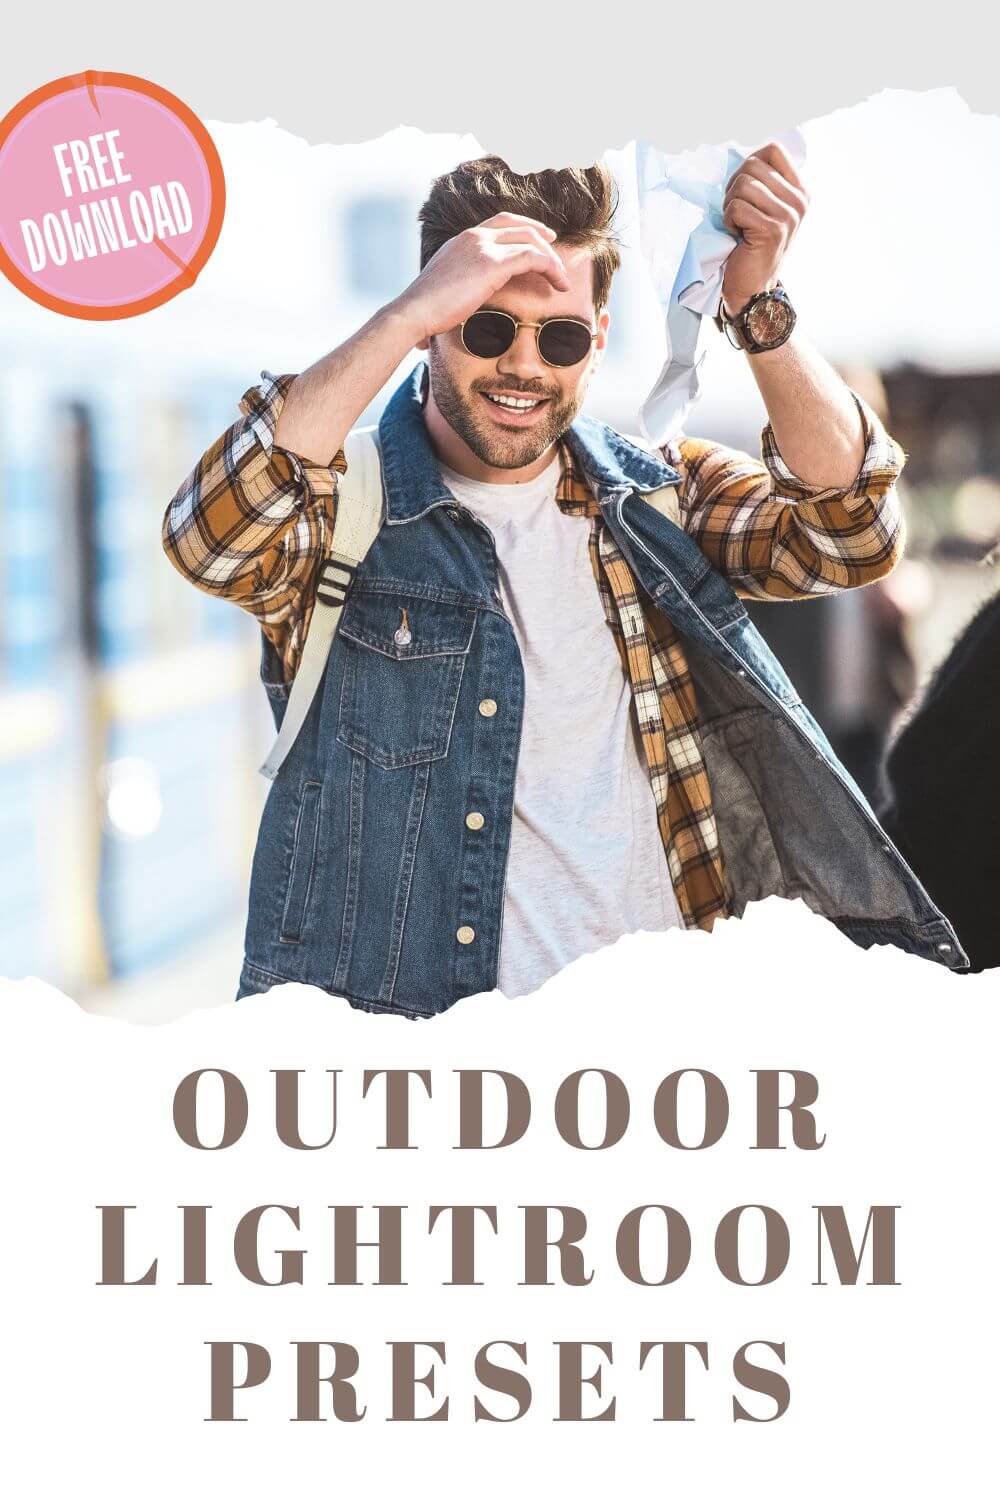 Outdoor Lightroom Presets Pinterest